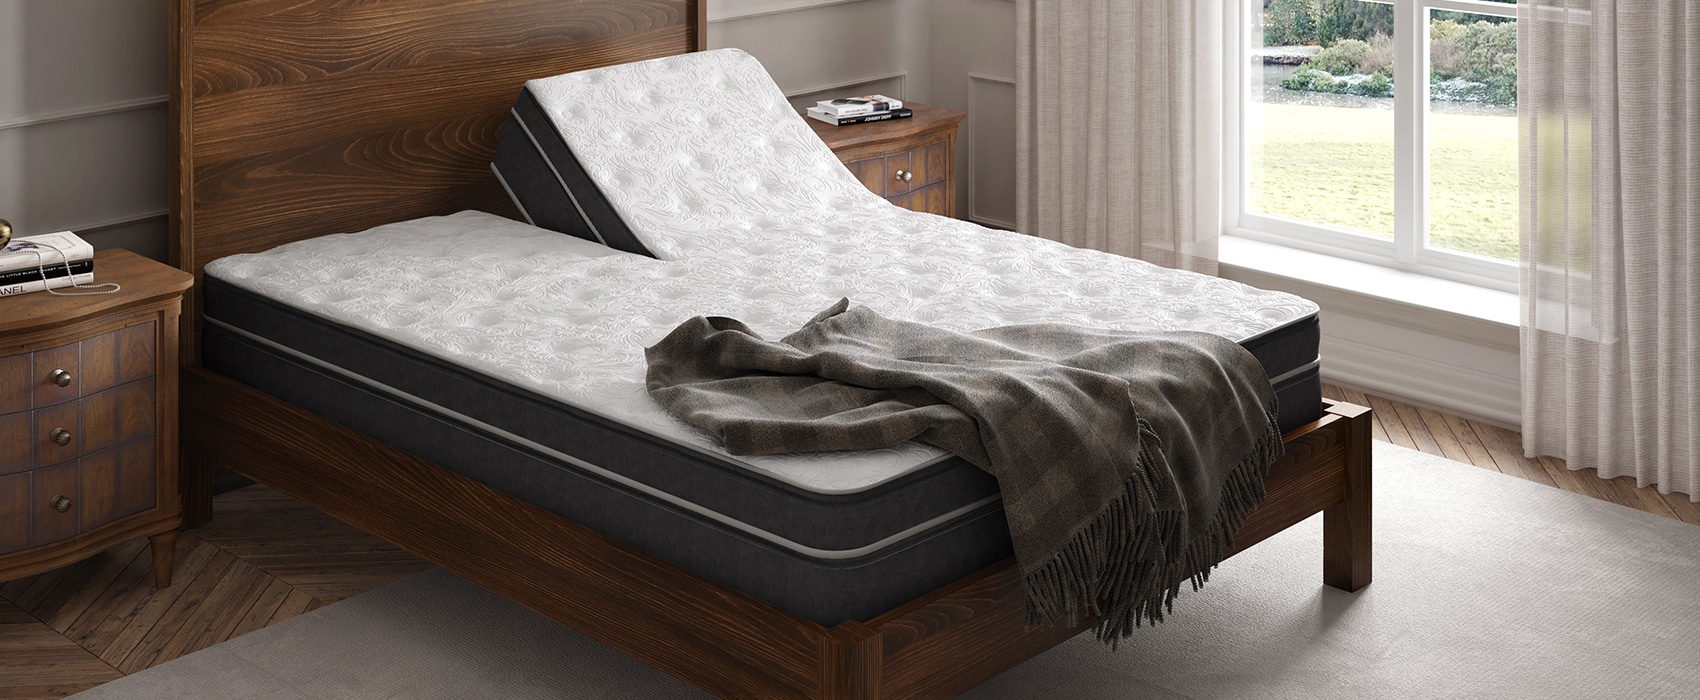 instant comfort air mattress parts